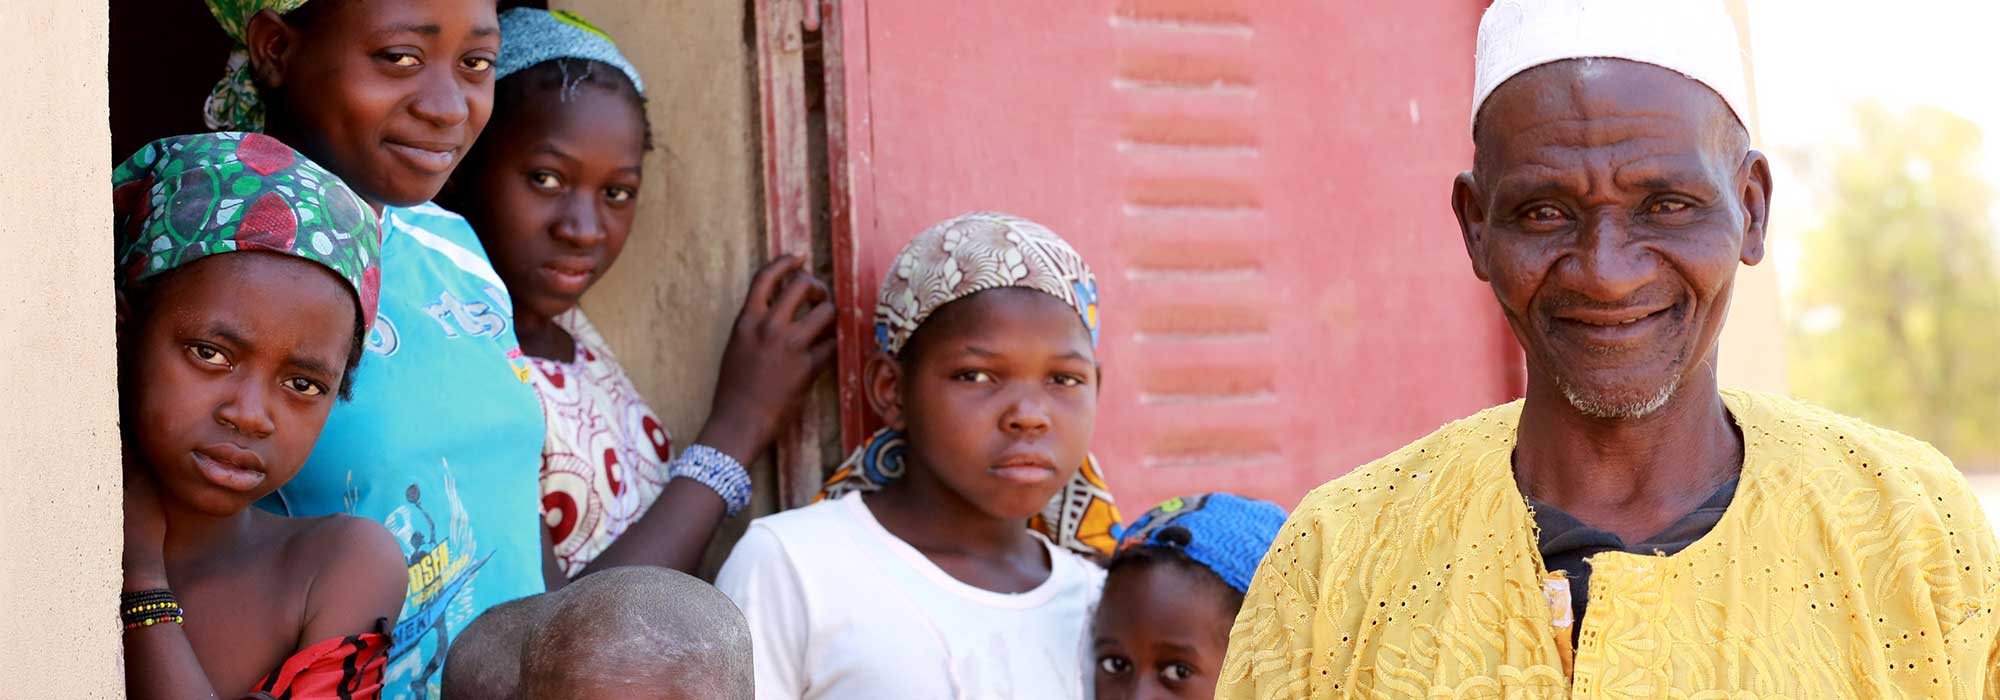 Afrique subsaharienne projet aider les plus vulnerables